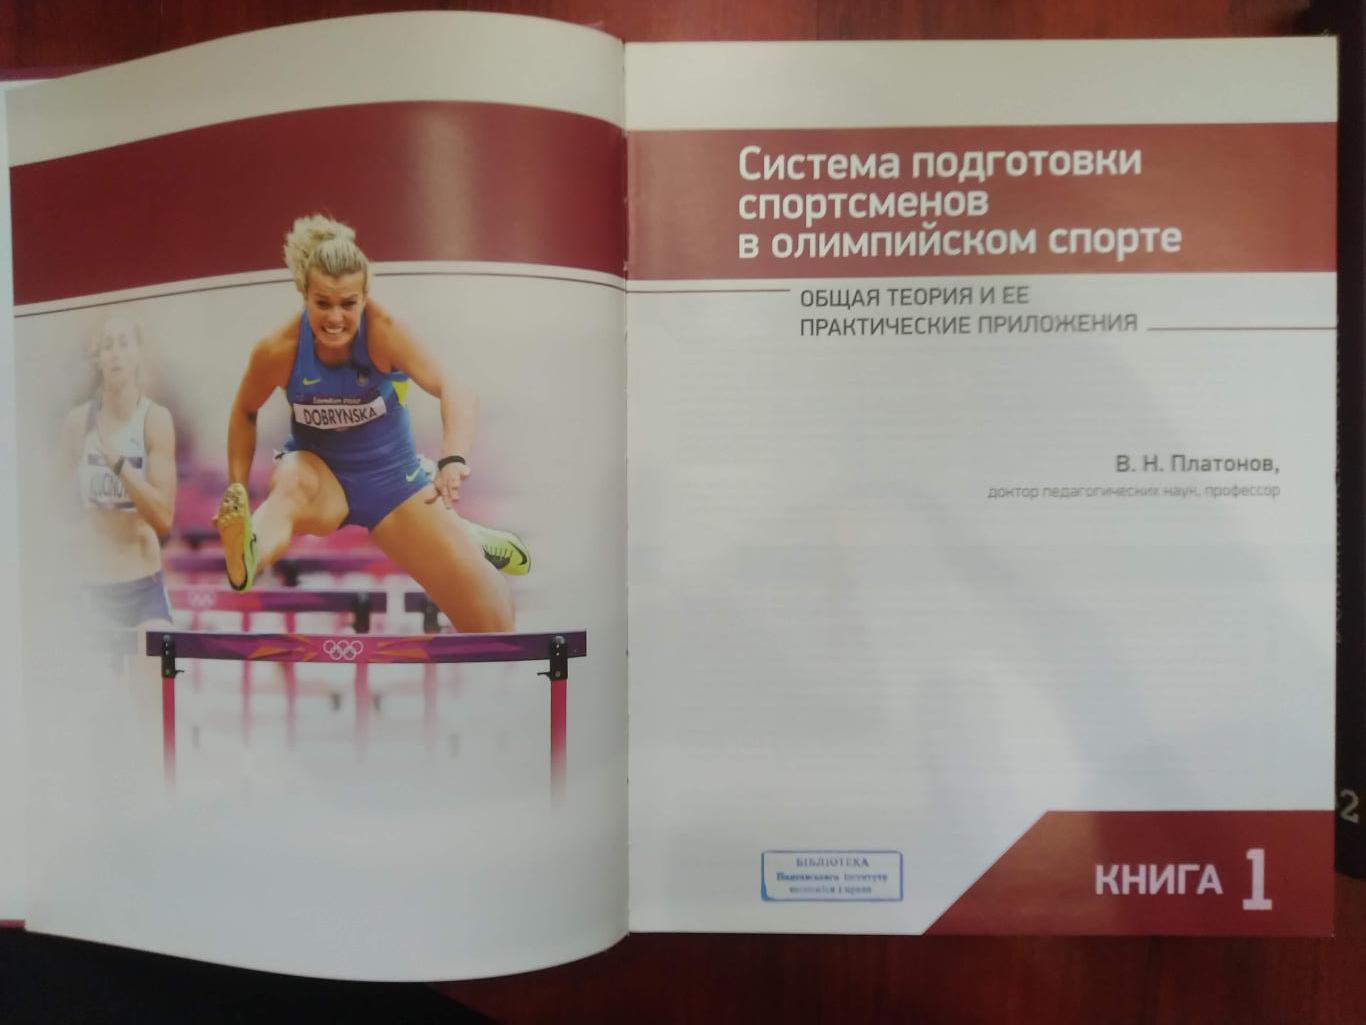 В.Н. ПлатоновСистема подготовки спортсменов в олимпийском спорте в 2 томах 1